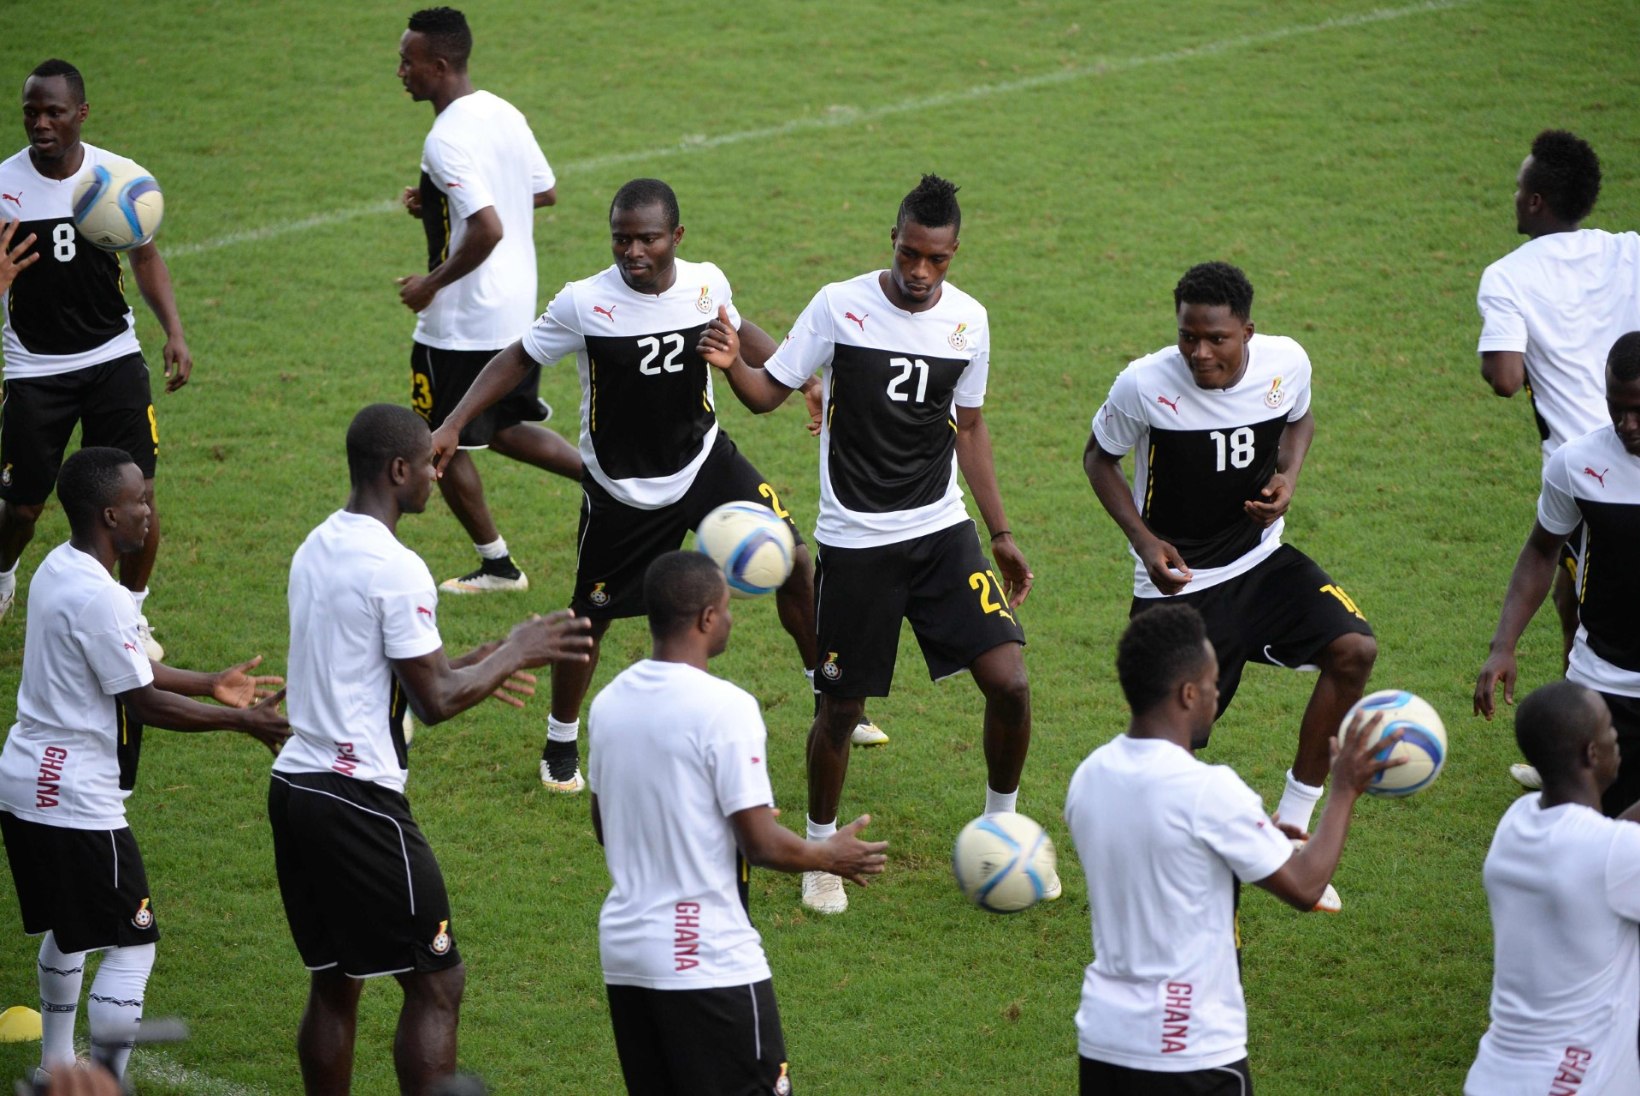 Kas Elevandiluurannik ja Ghana korraldavad tänagi meeletu penaltišõu?